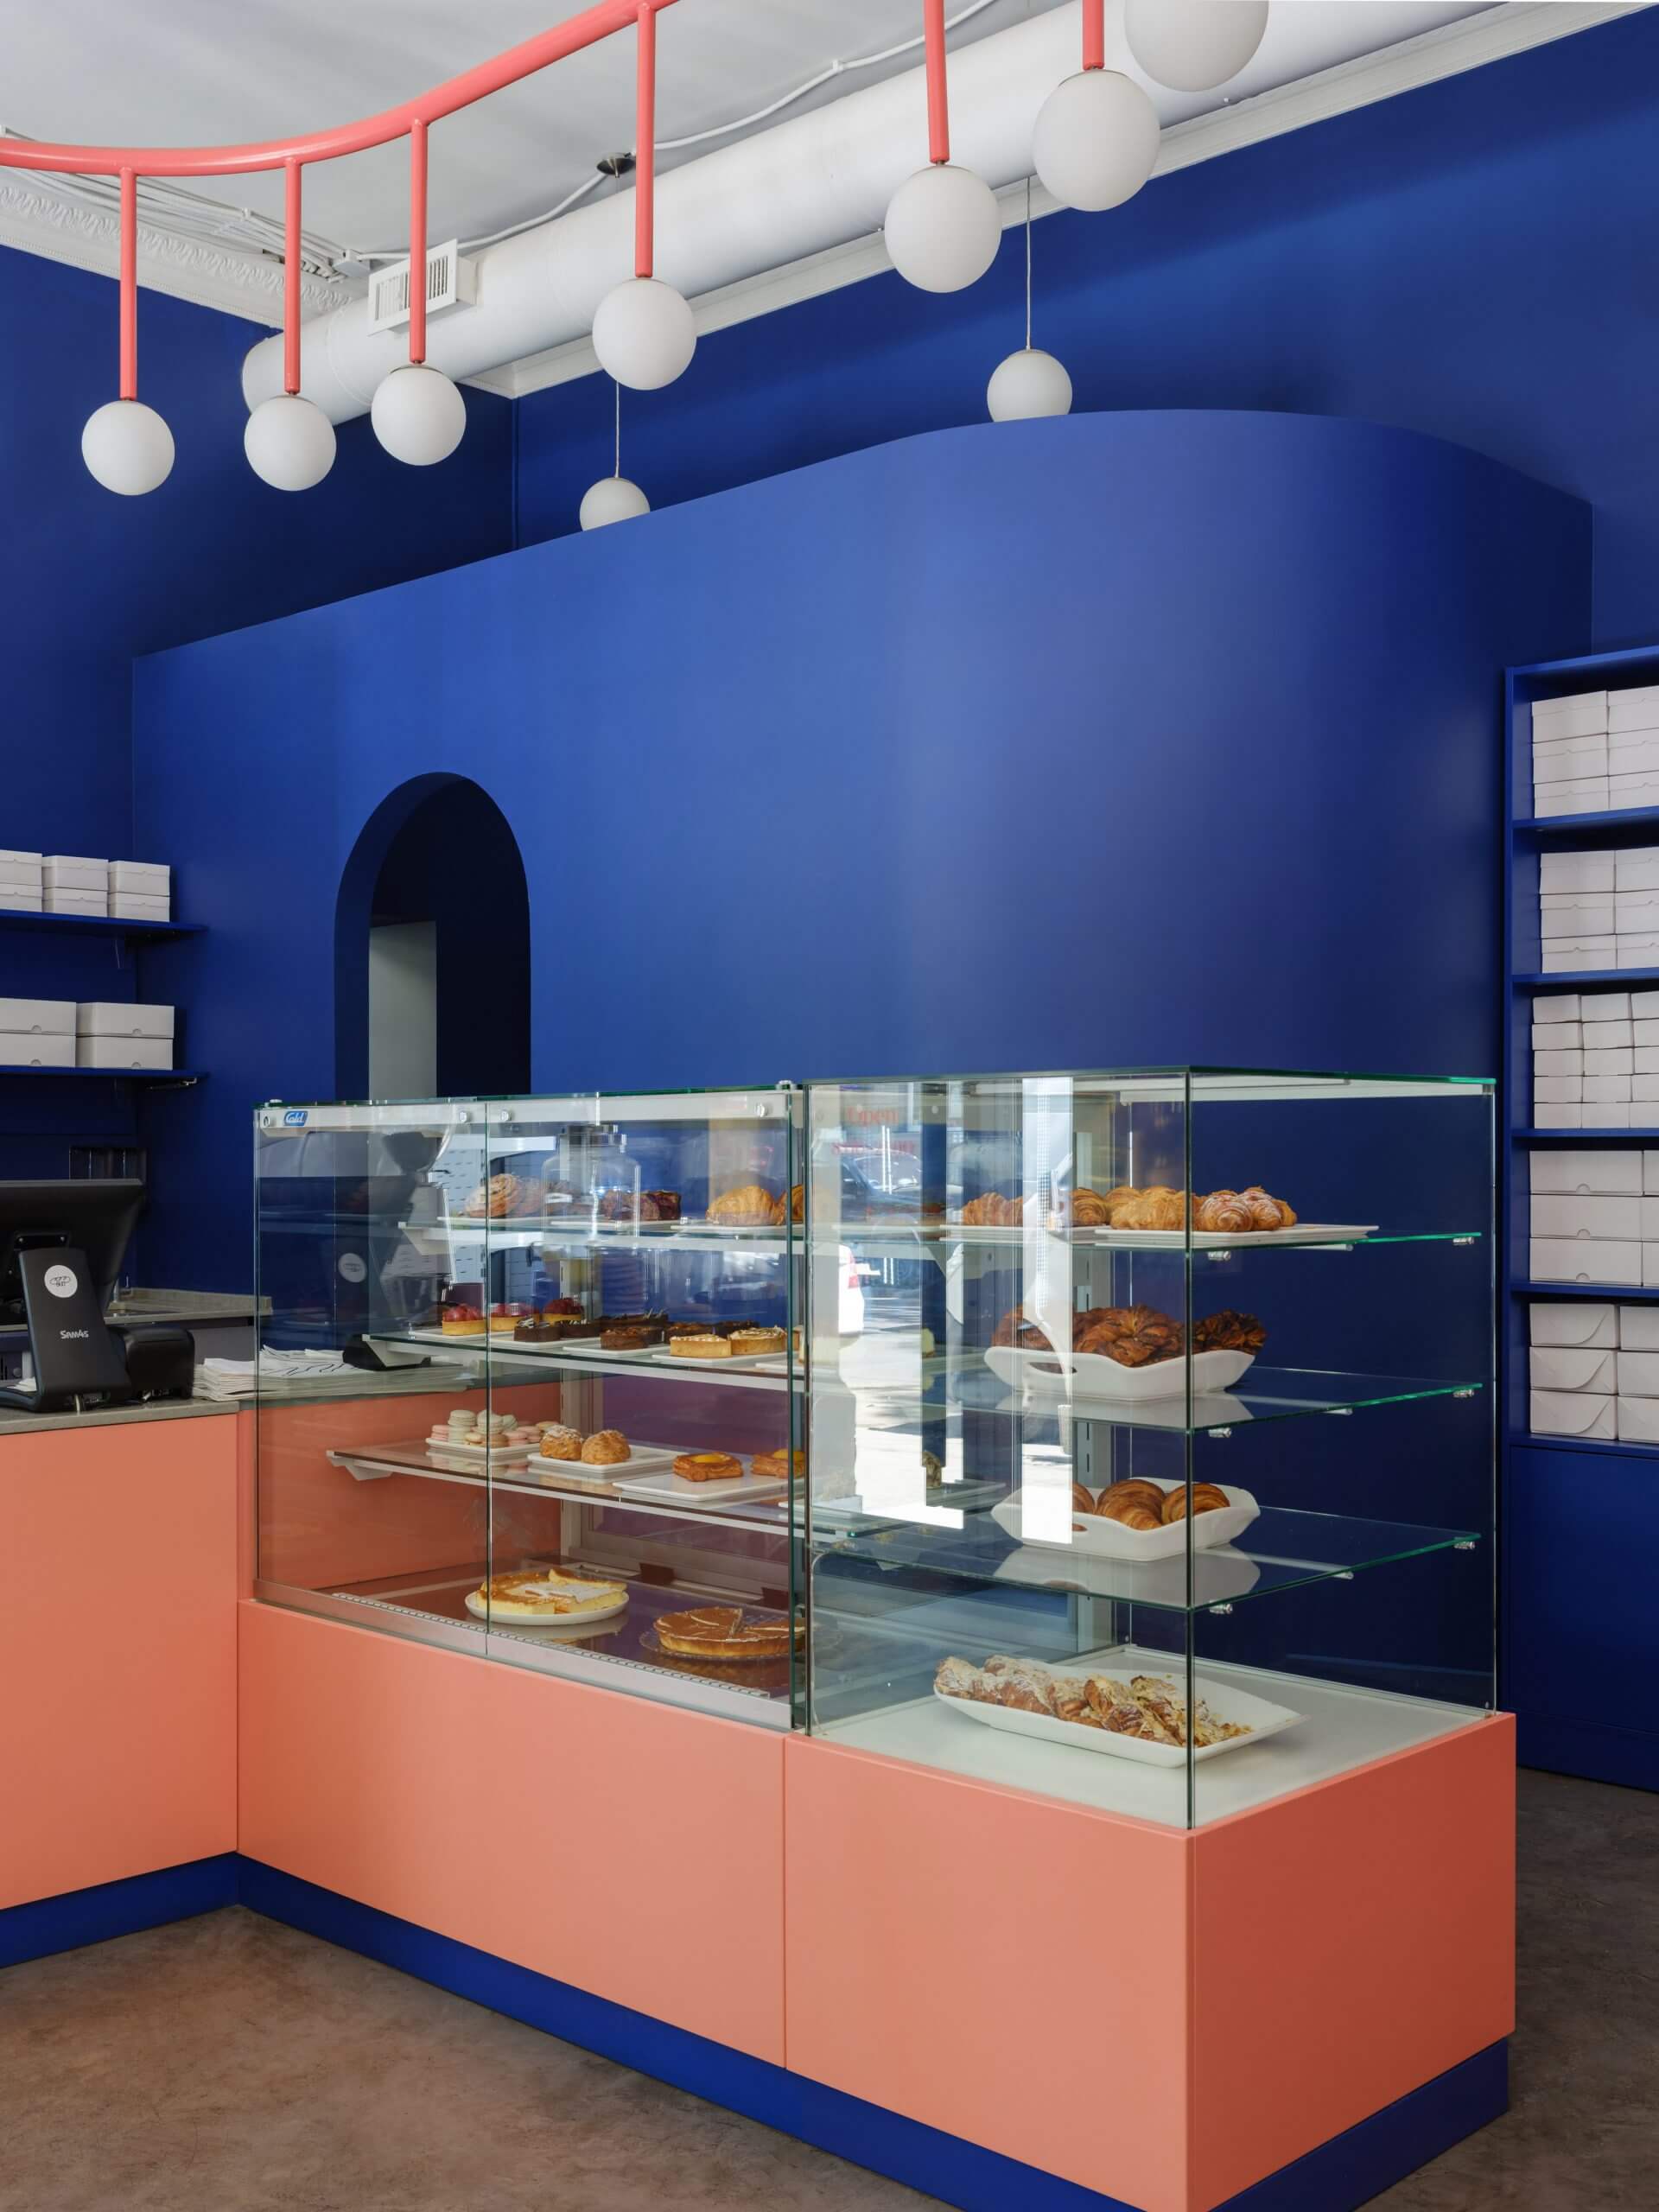 Tham khảo những mẫu thiết kế cửa hàng bánh ngọt đẹp, ấn tượng